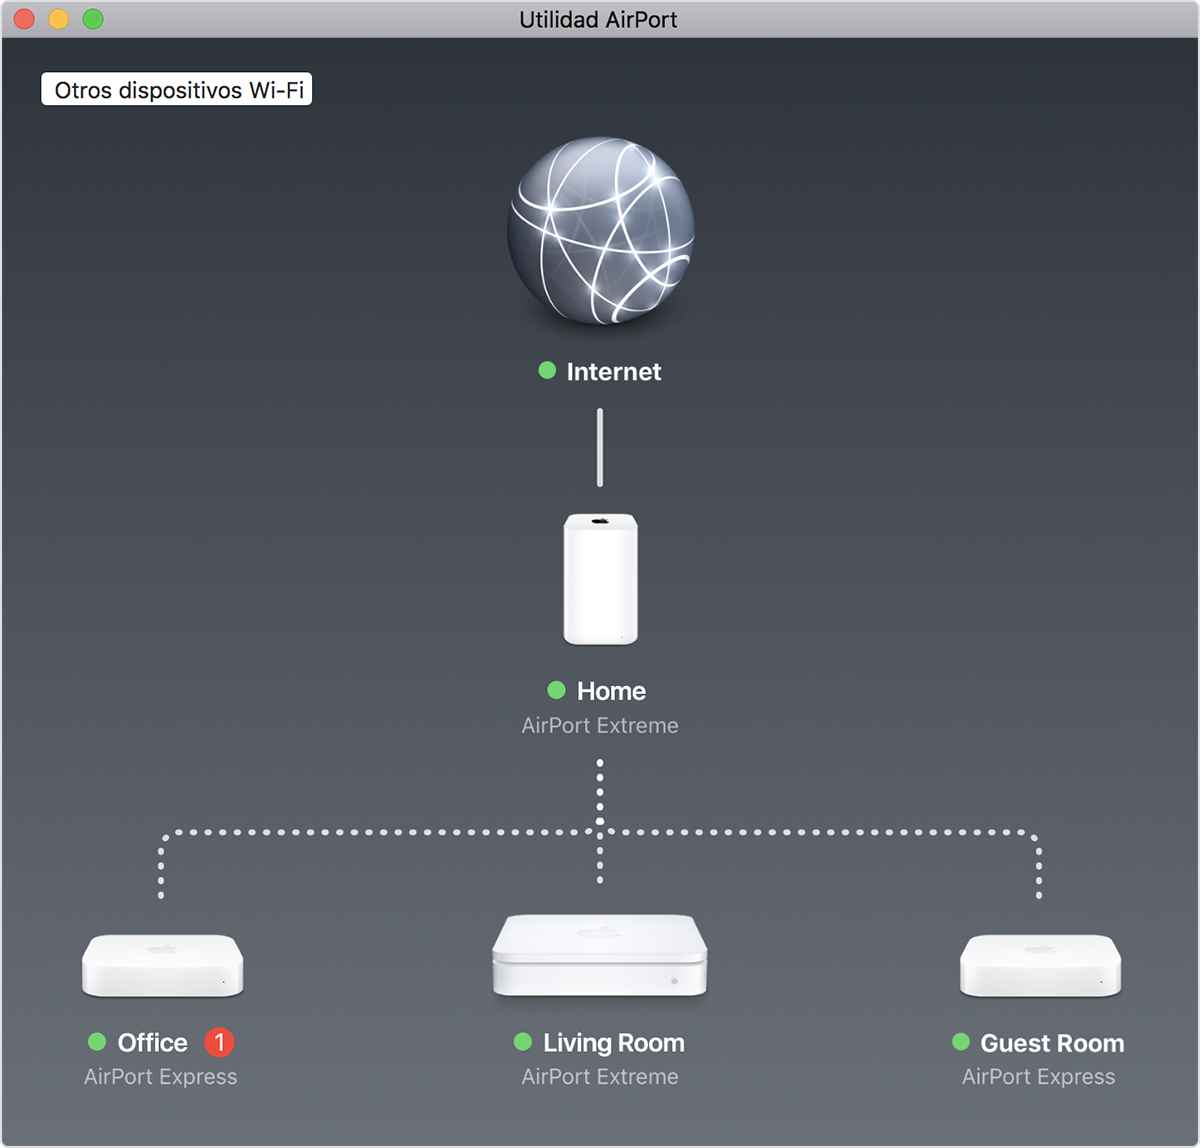 Actualizar el firmware de la estación base AirPort - Soporte técnico de  Apple (MX)